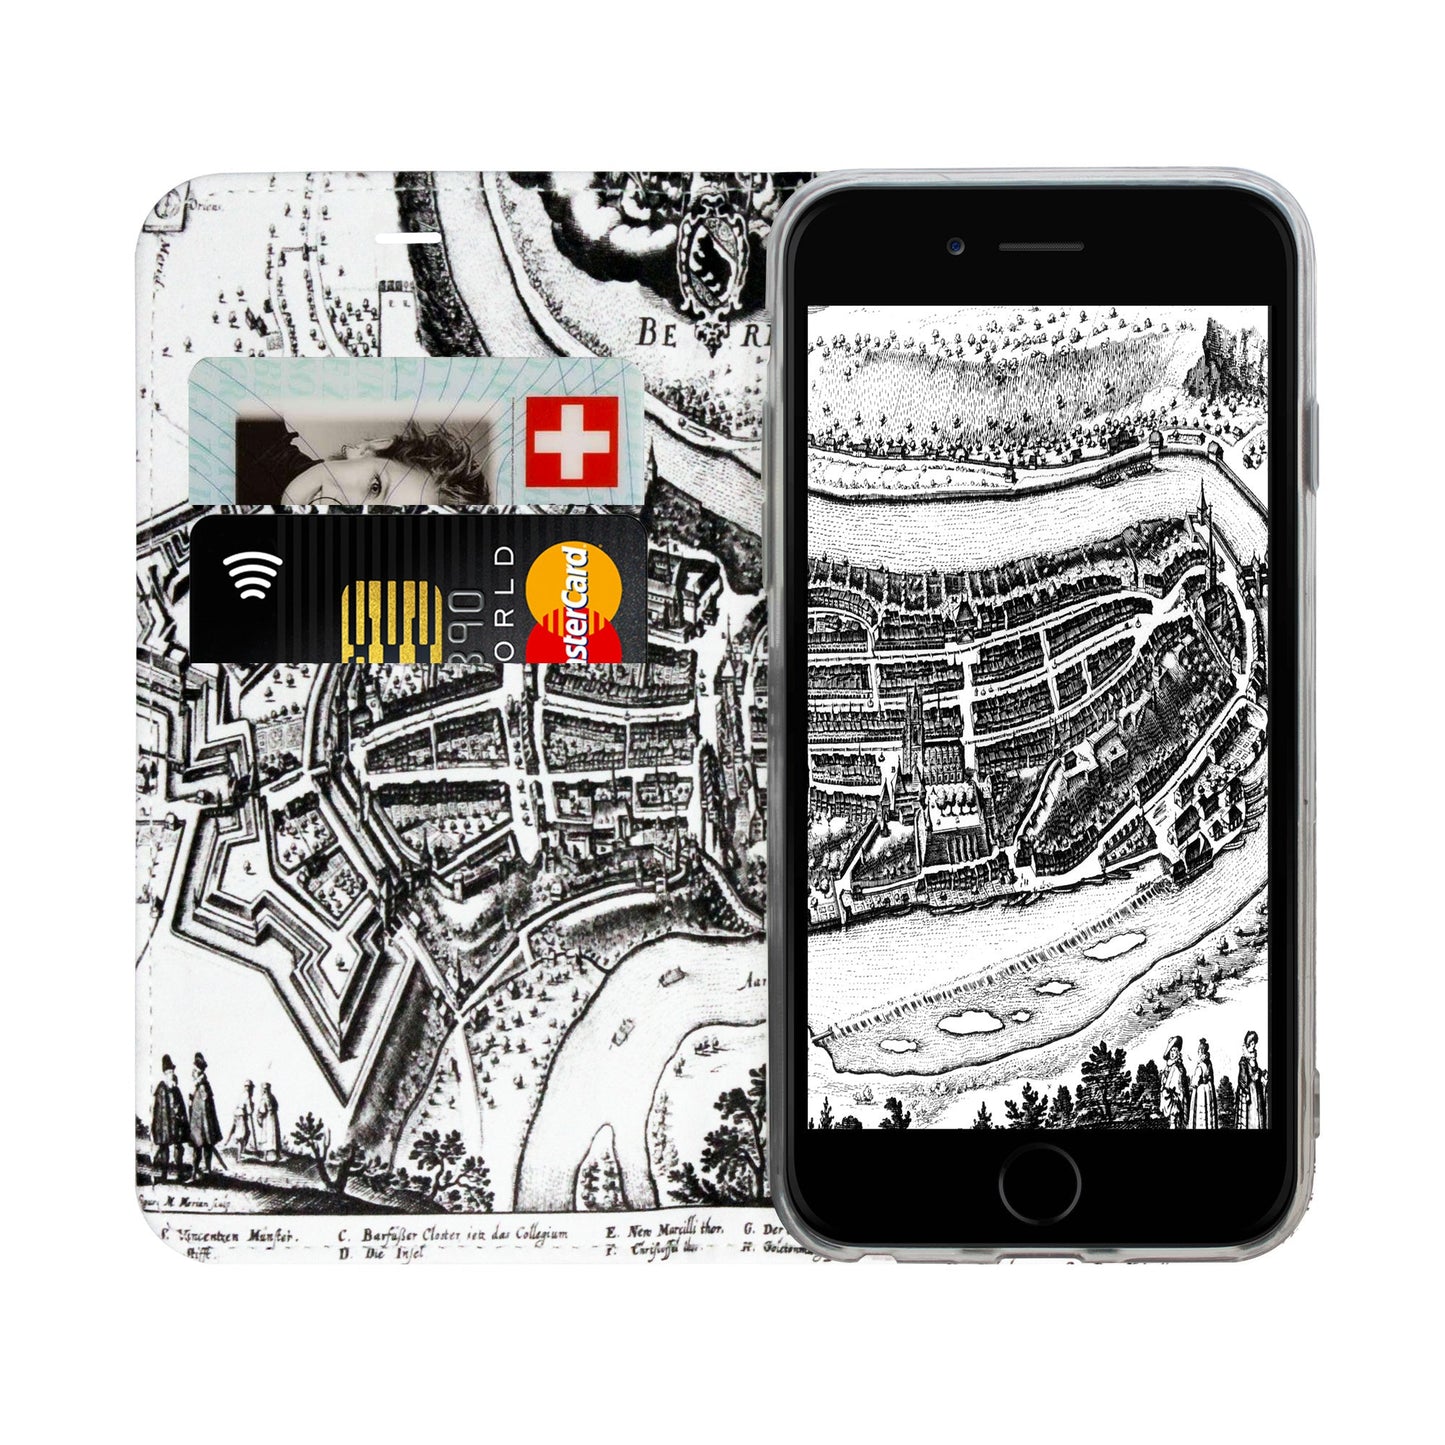 Bern City Panorama Case für iPhone 6/6S/7/8/SE 2/SE 3